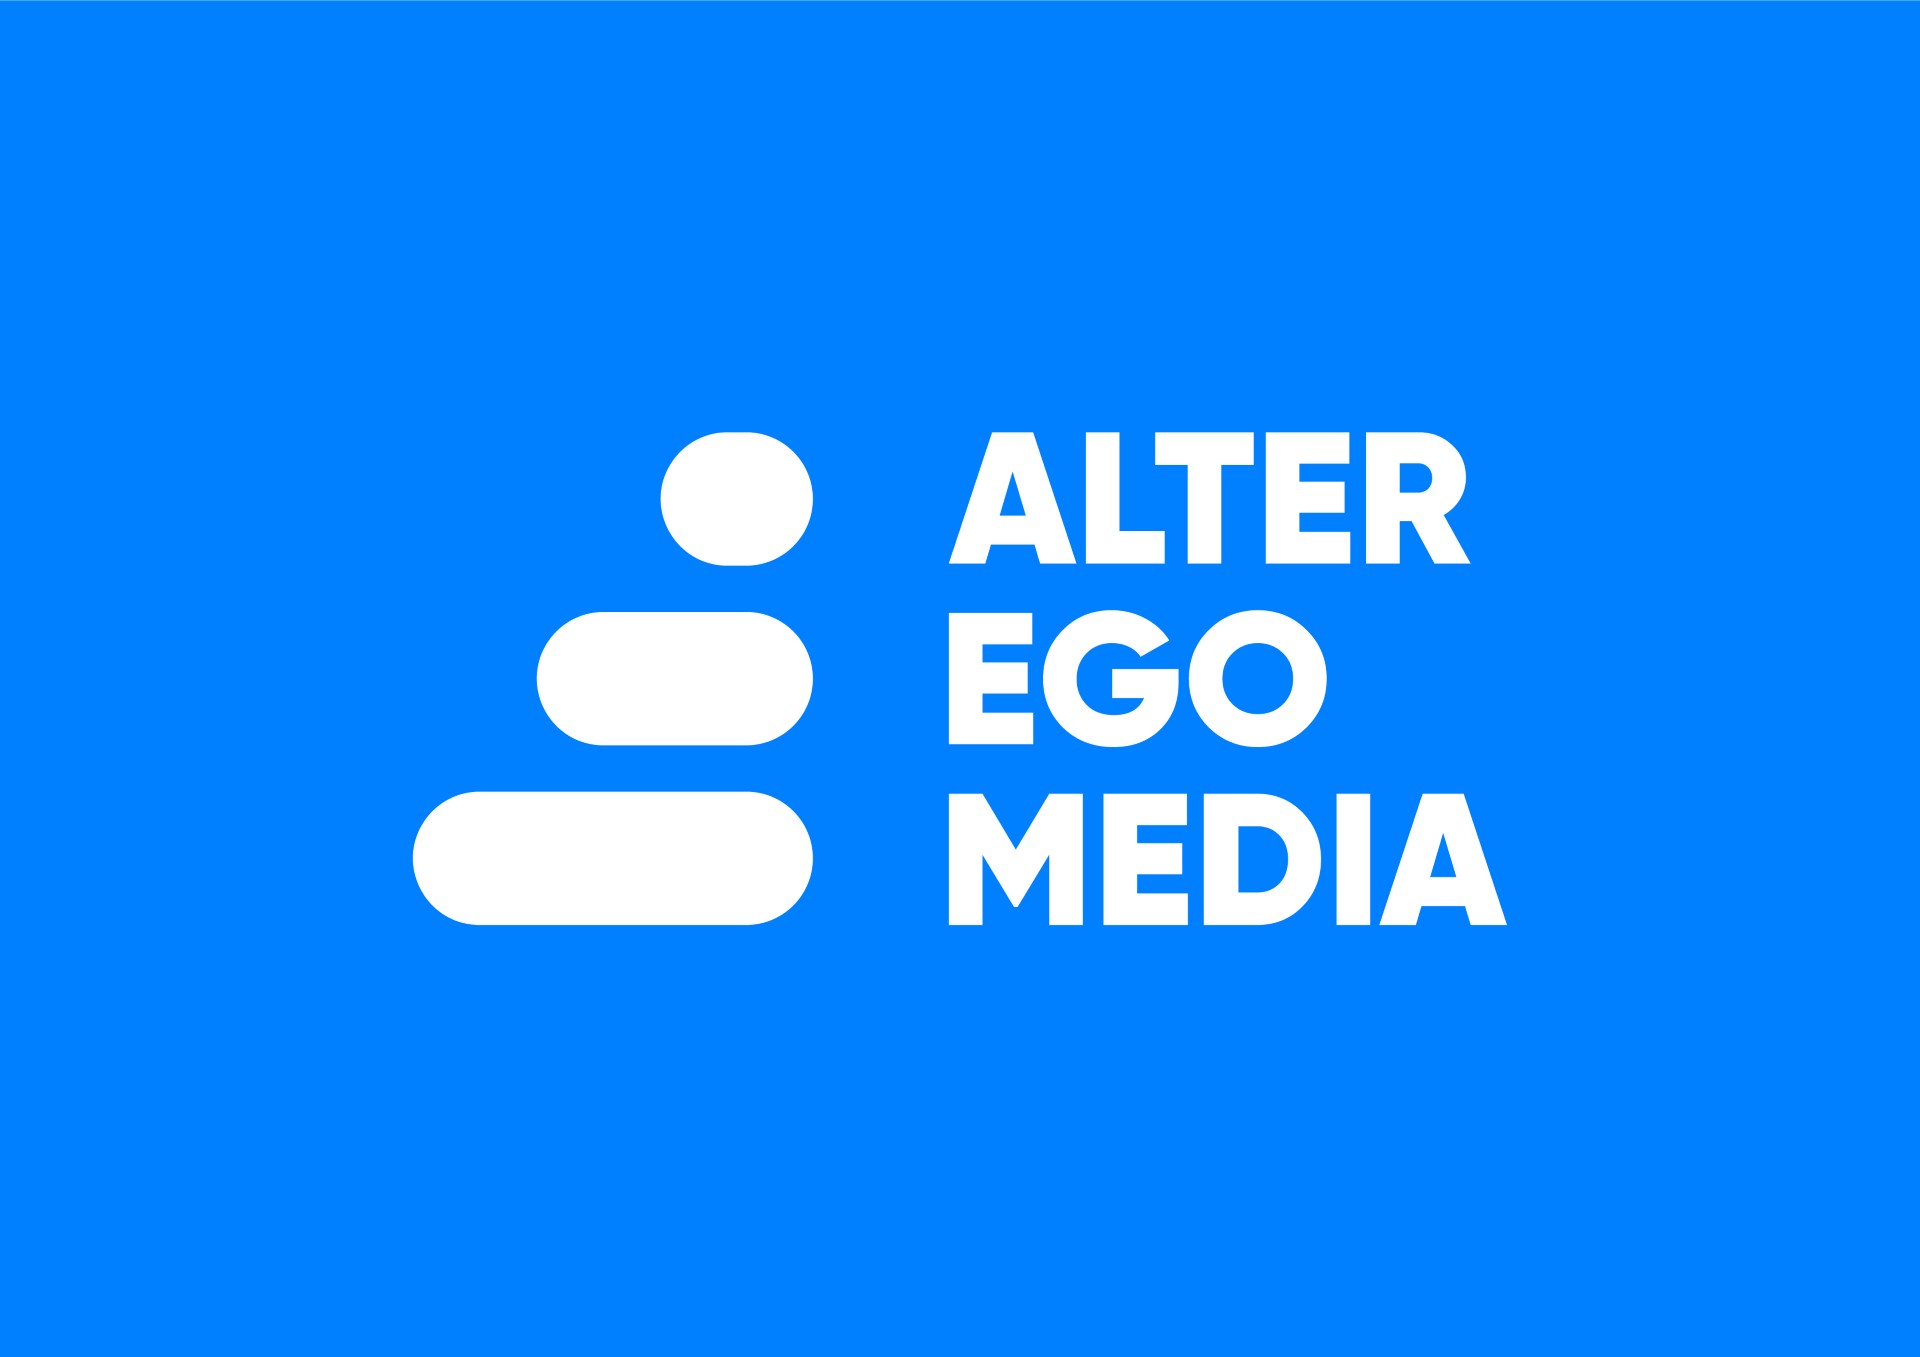 Alter Ego Media: Νέα Εταιρική Ταυτότητα Καινοτομία, Πολυφωνία και Έμπνευση